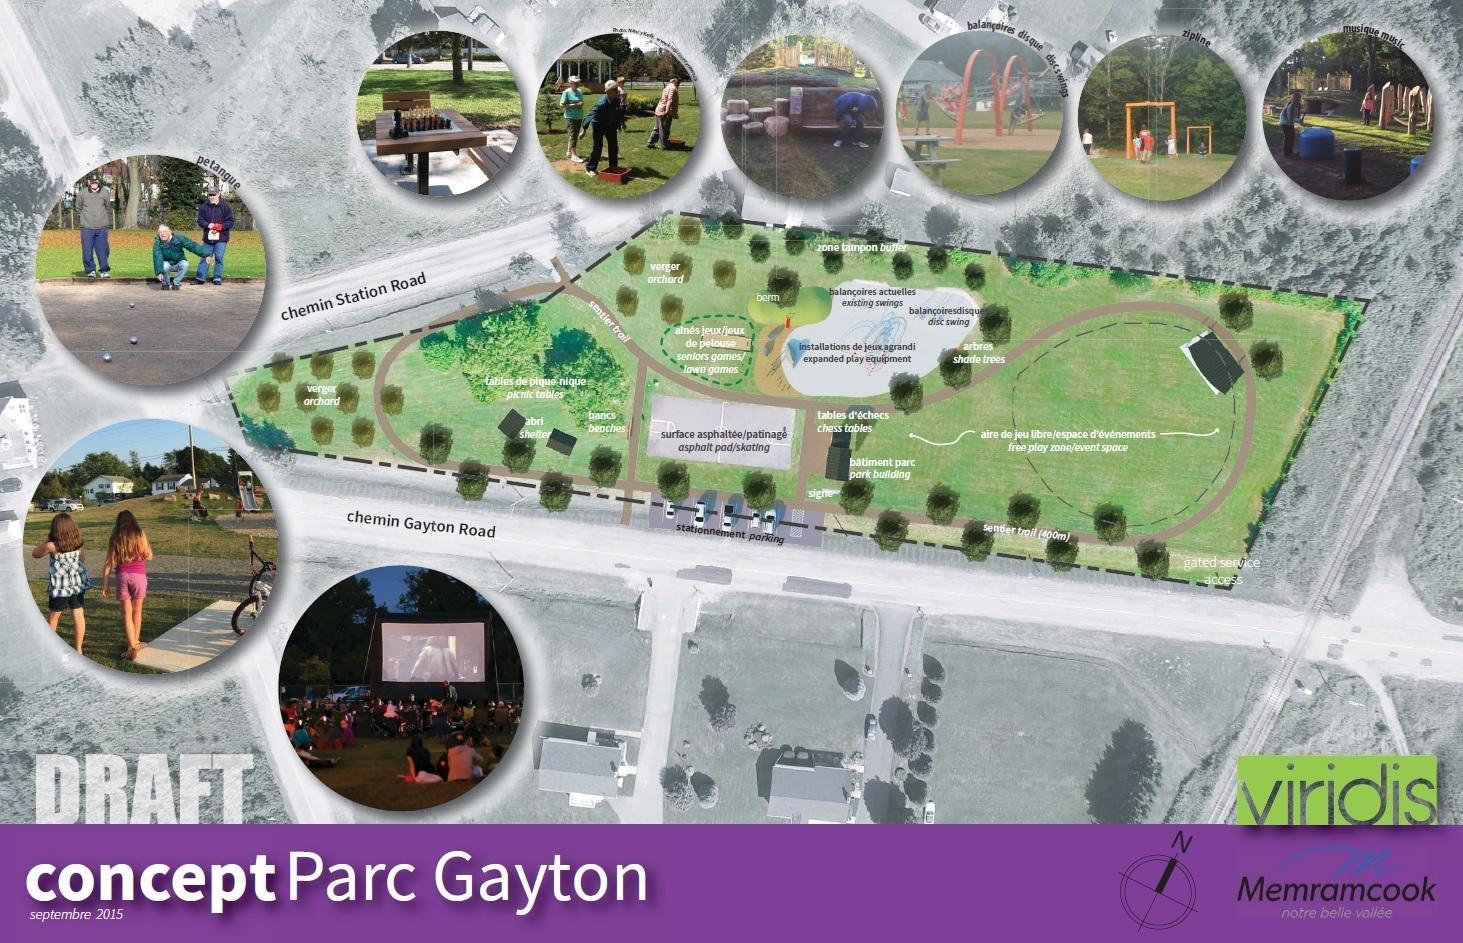 Parc Gayton Park